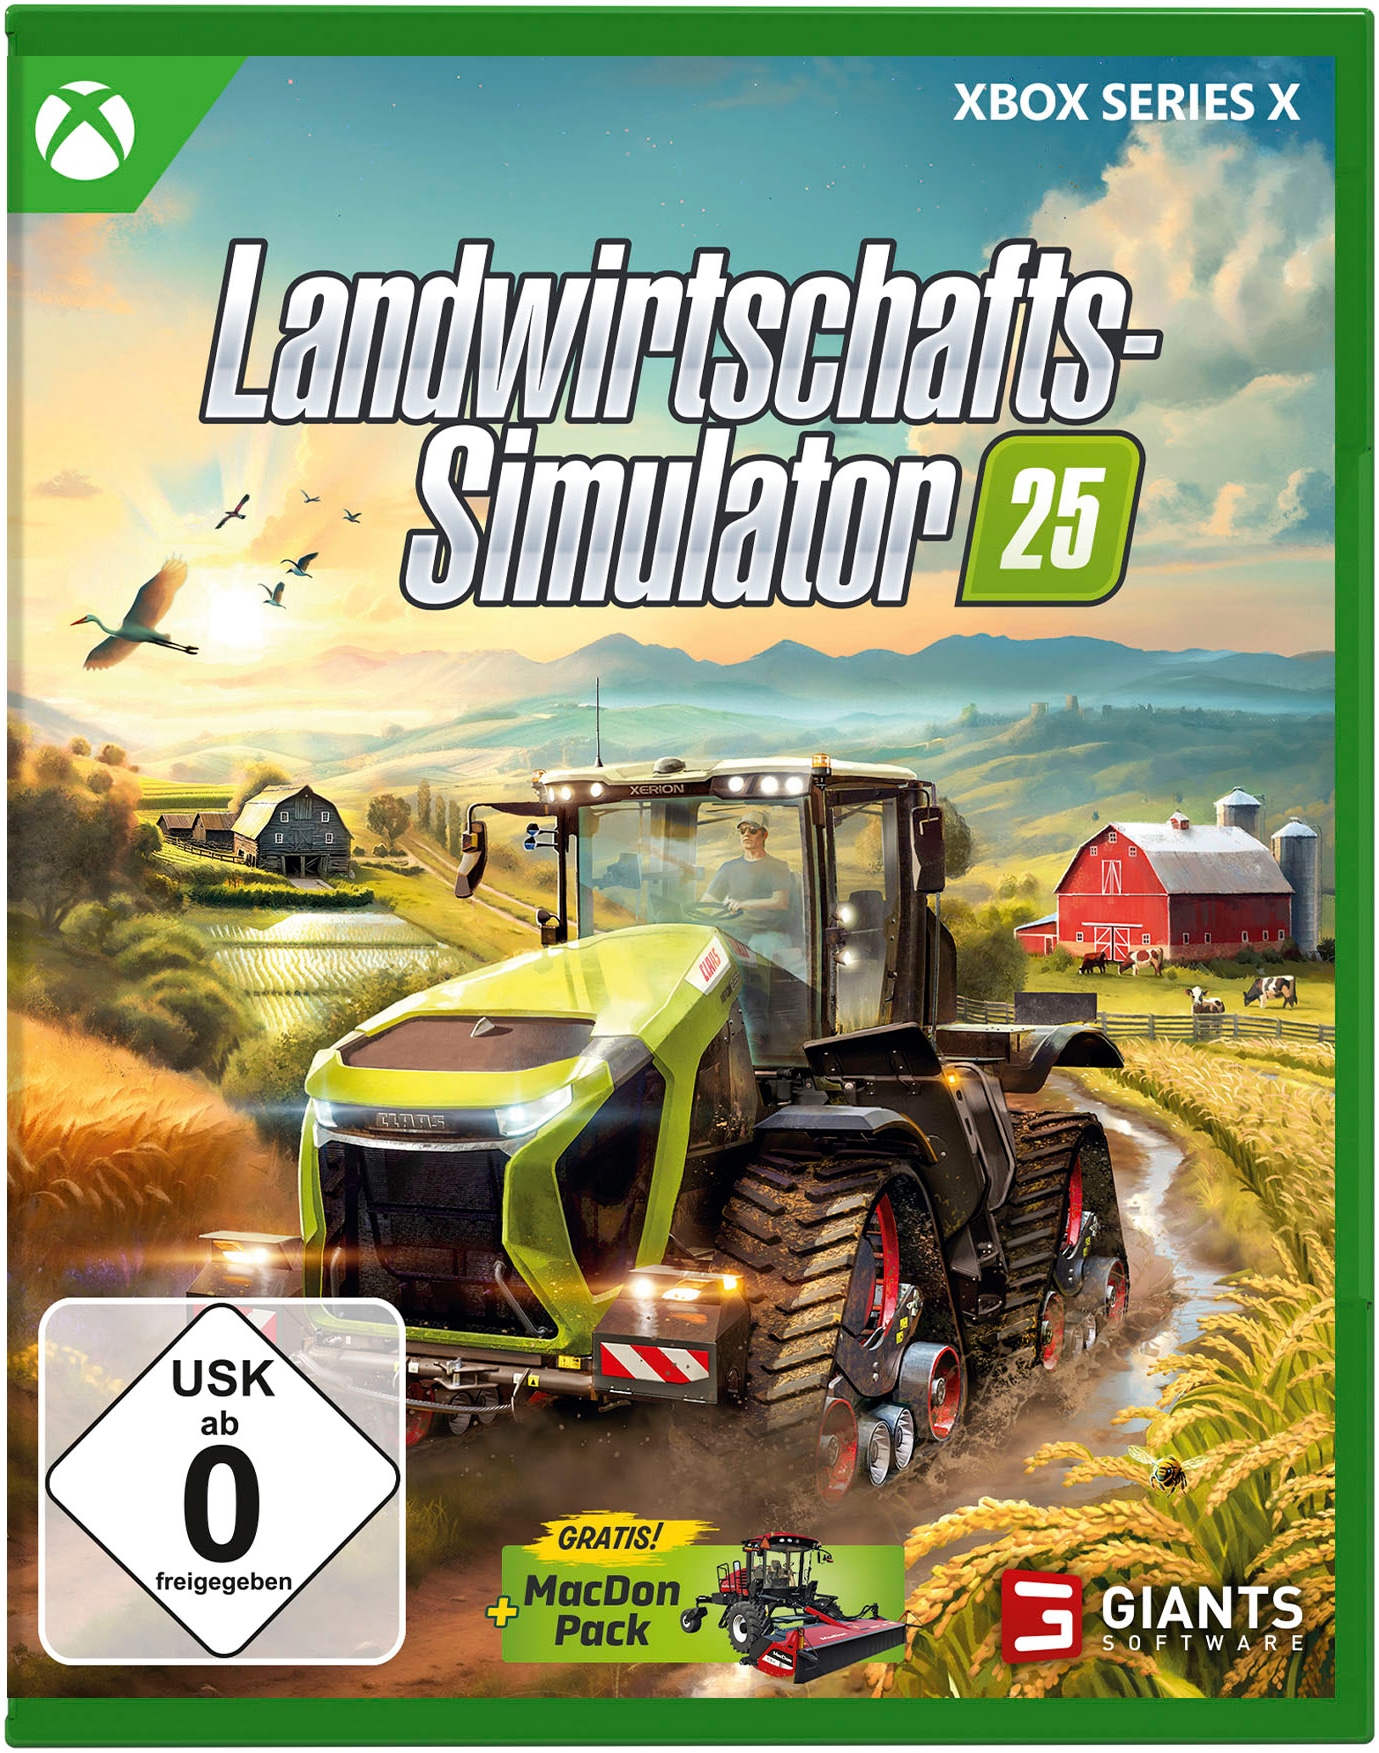 Spielesoftware »Landwirtschafts-Simulator 25«, Xbox Series X